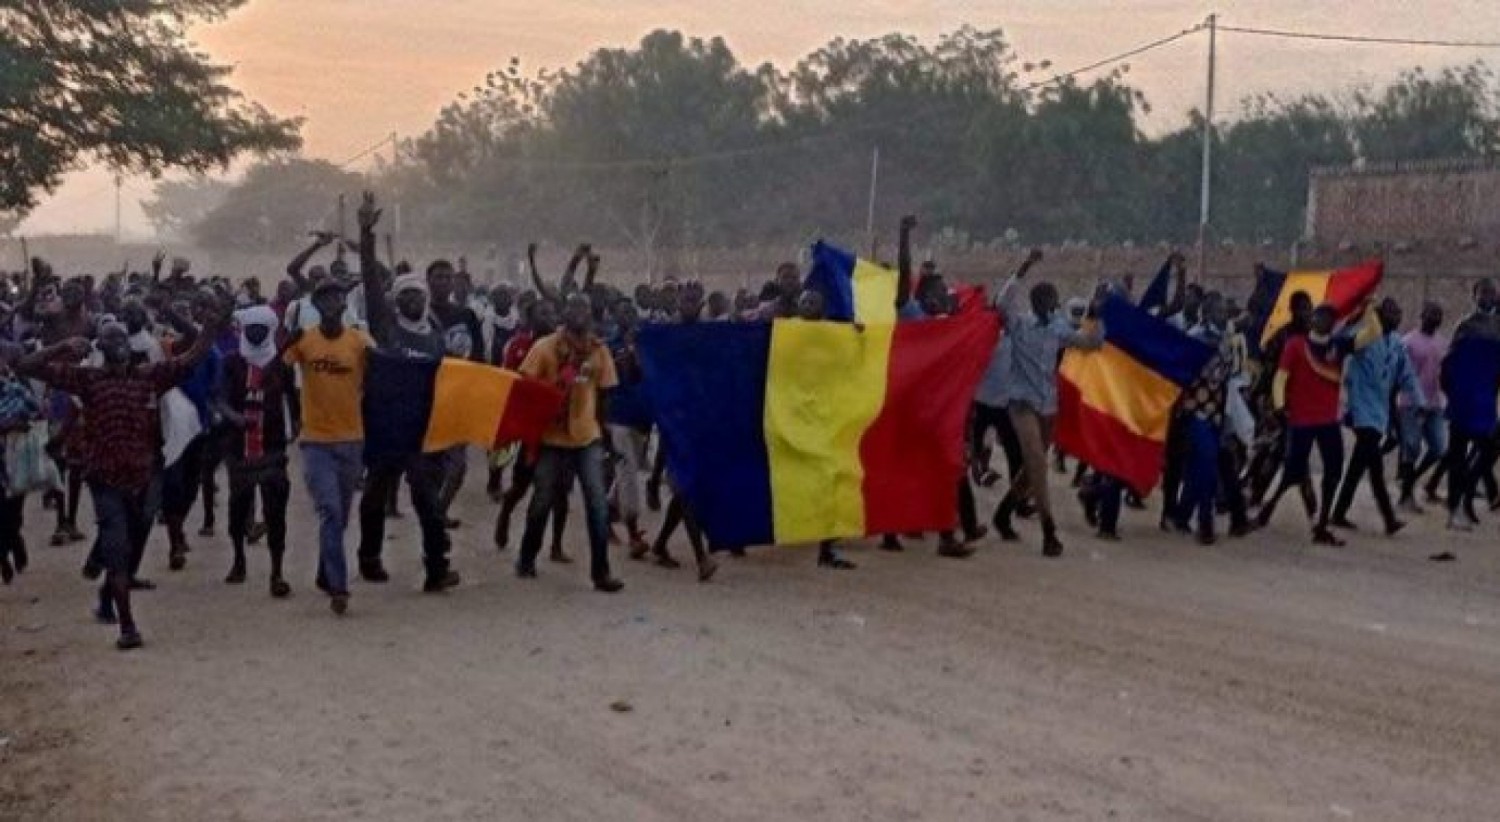 Tchad : En mémoire des victimes, Mahamat Idriss sort enfin du silence et décrète un deuil national de sept jours